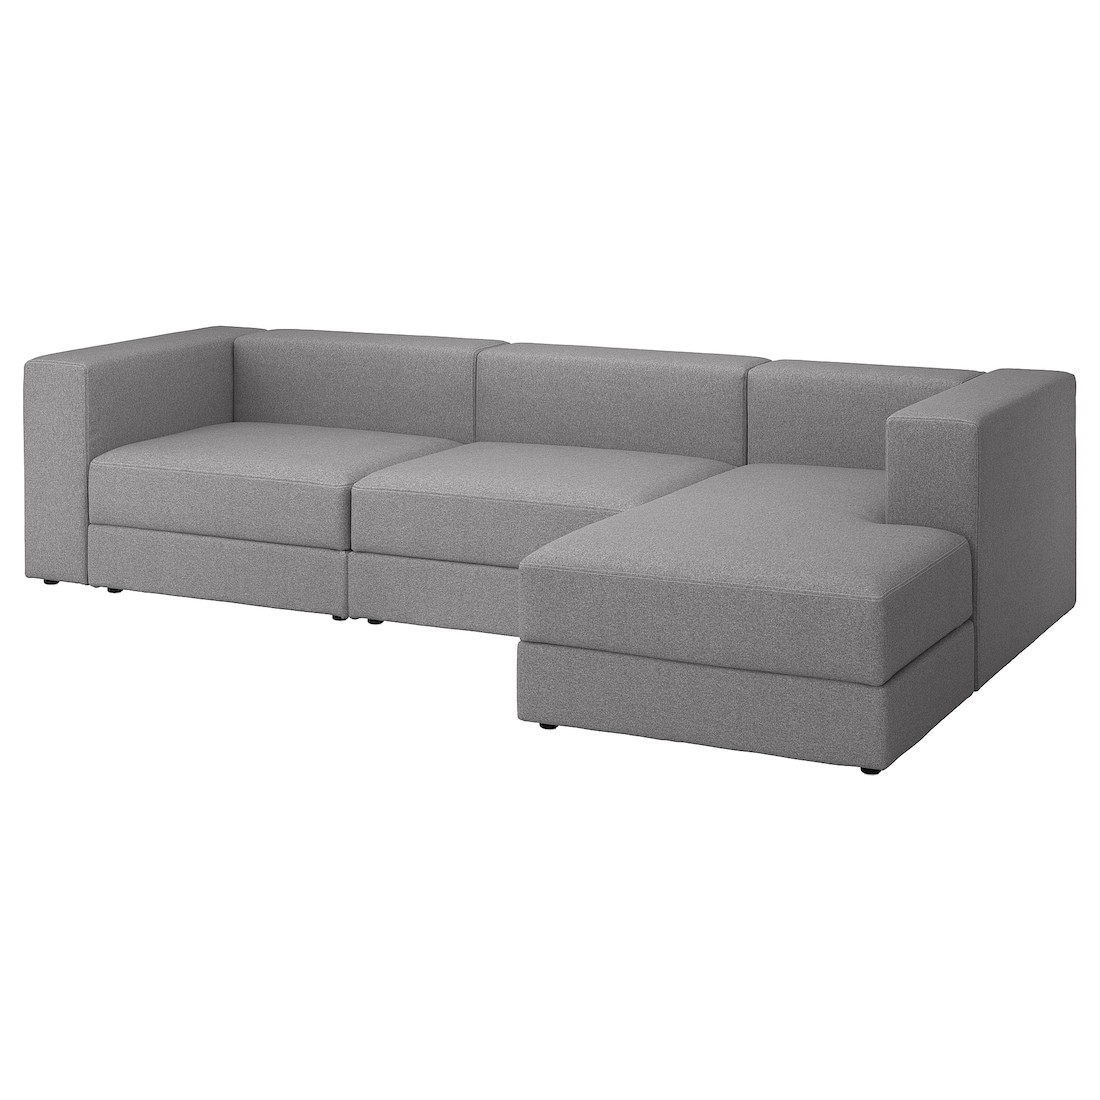 JÄTTEBO 4-місний модульний диван з шезлонгом, правосторонній / Tonerud сірий